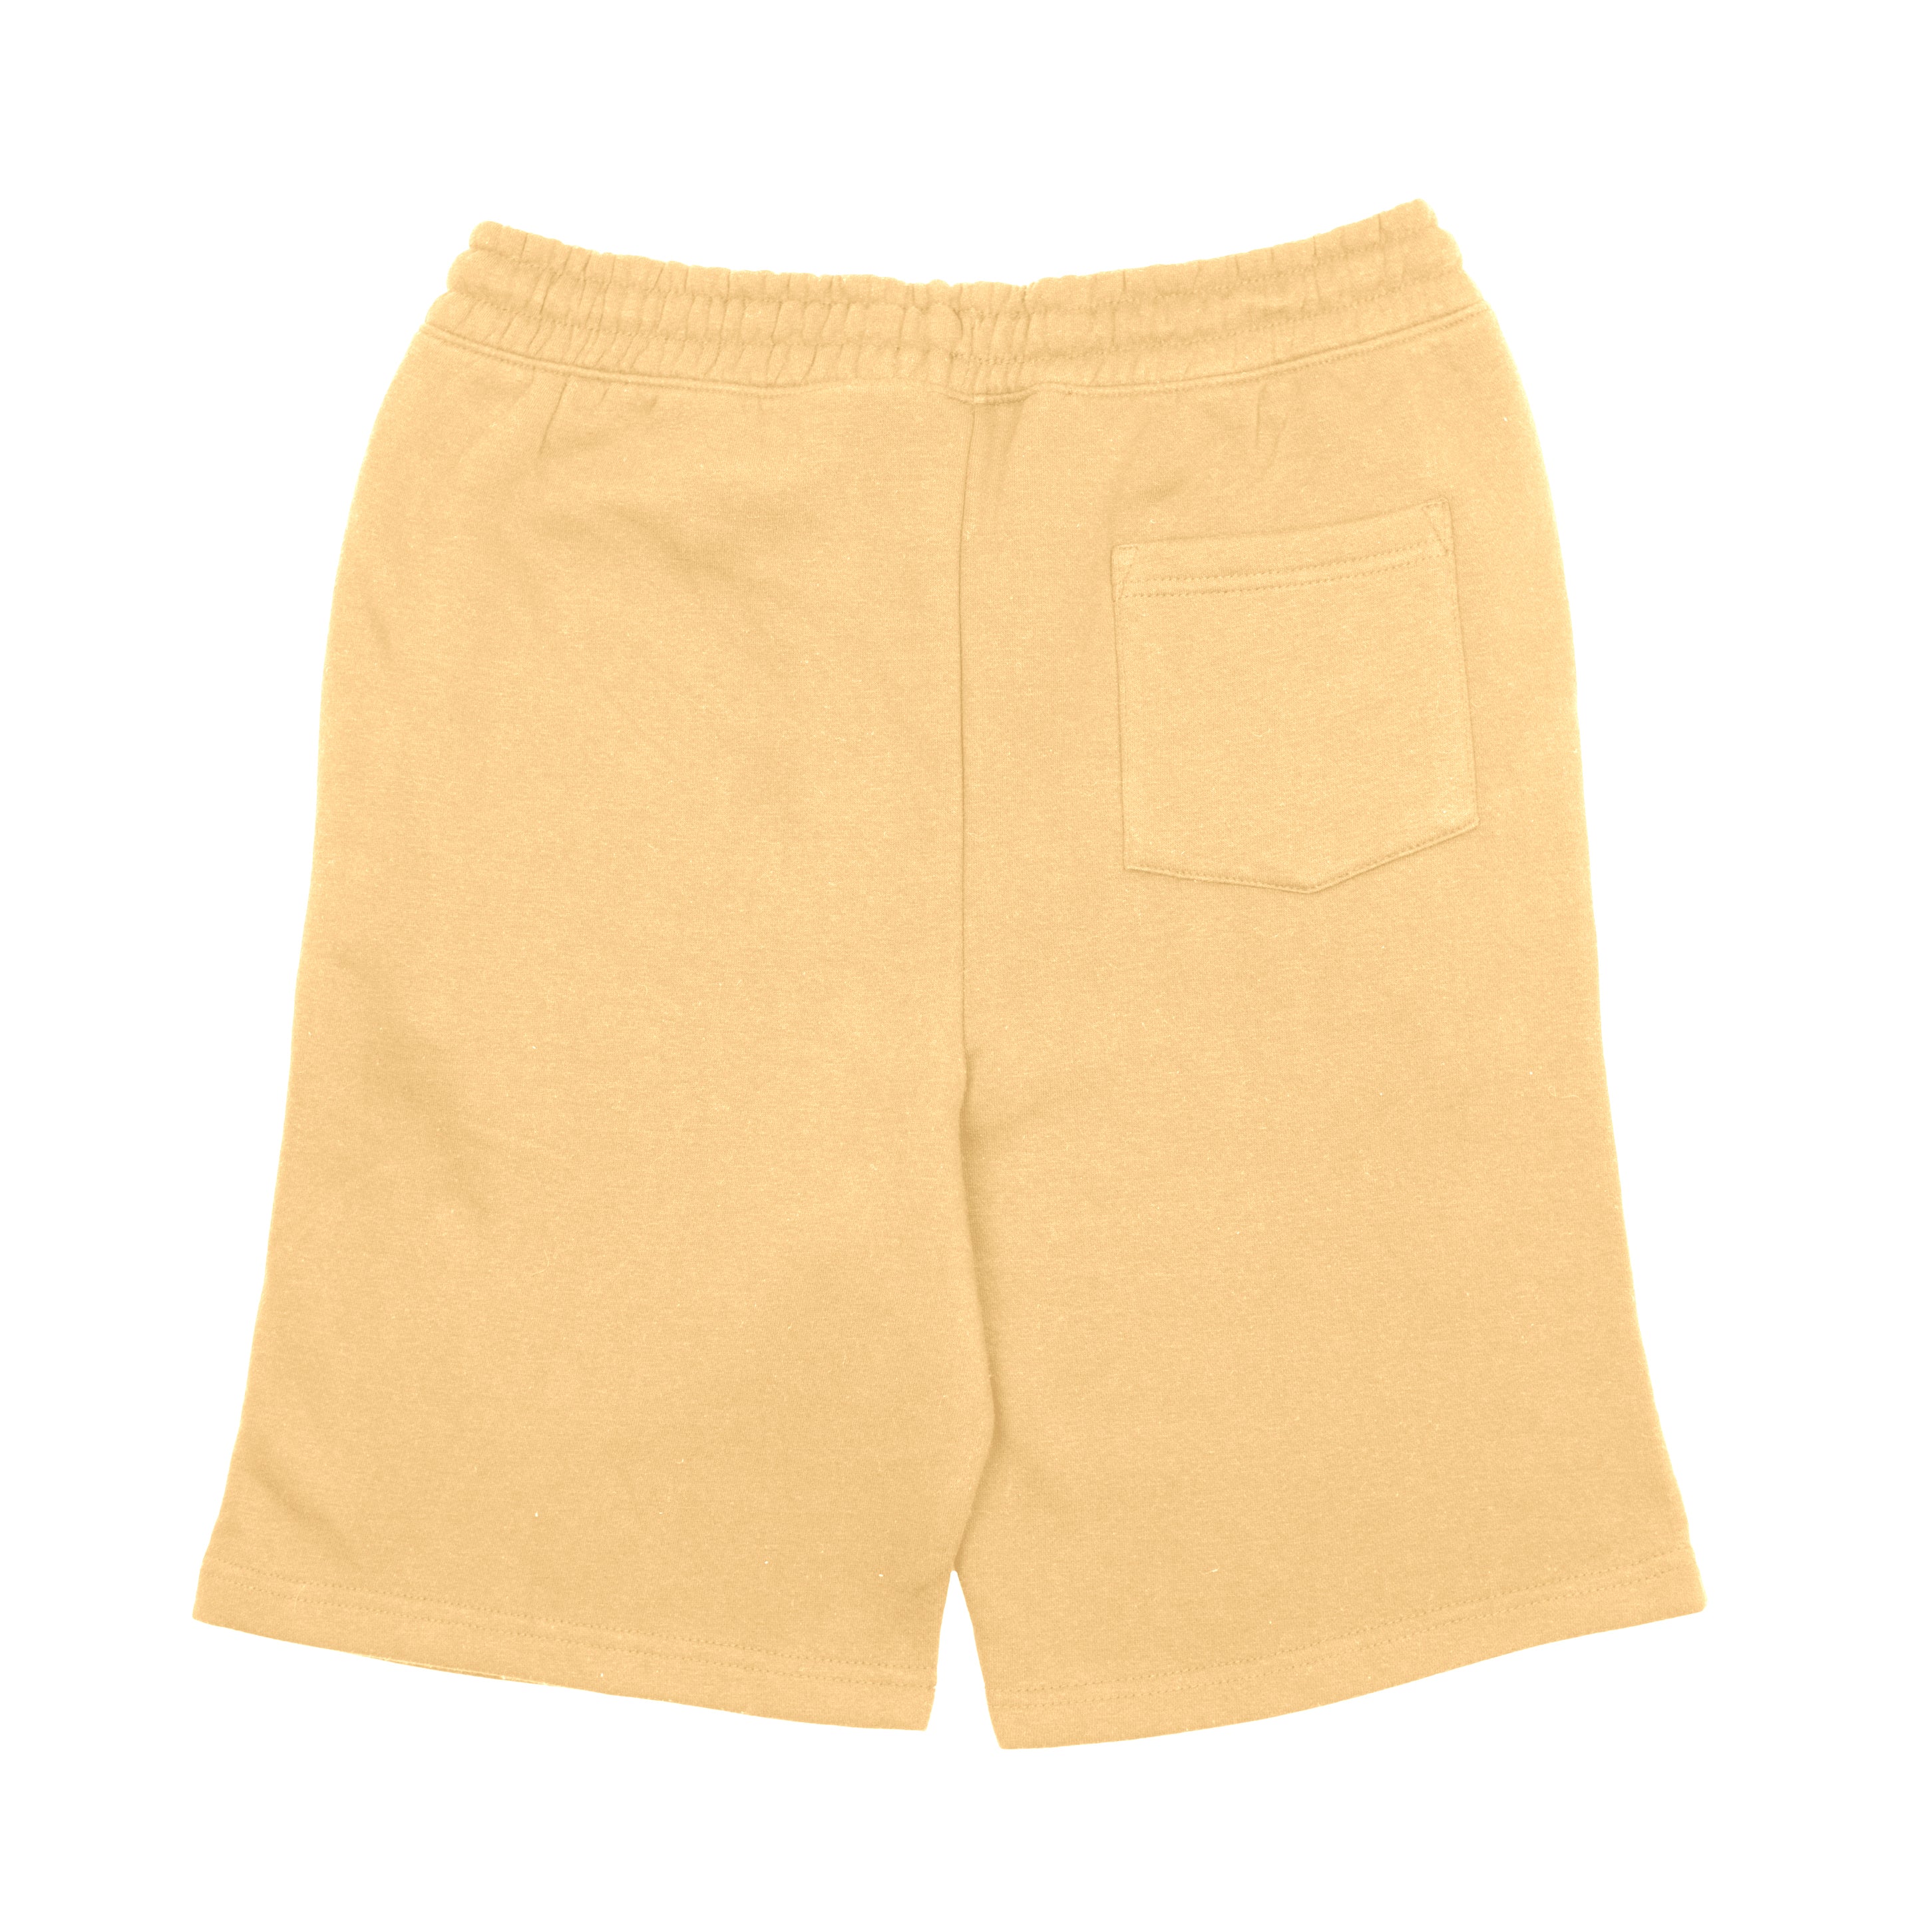 SS786 Fleece Shorts - Pina Colada